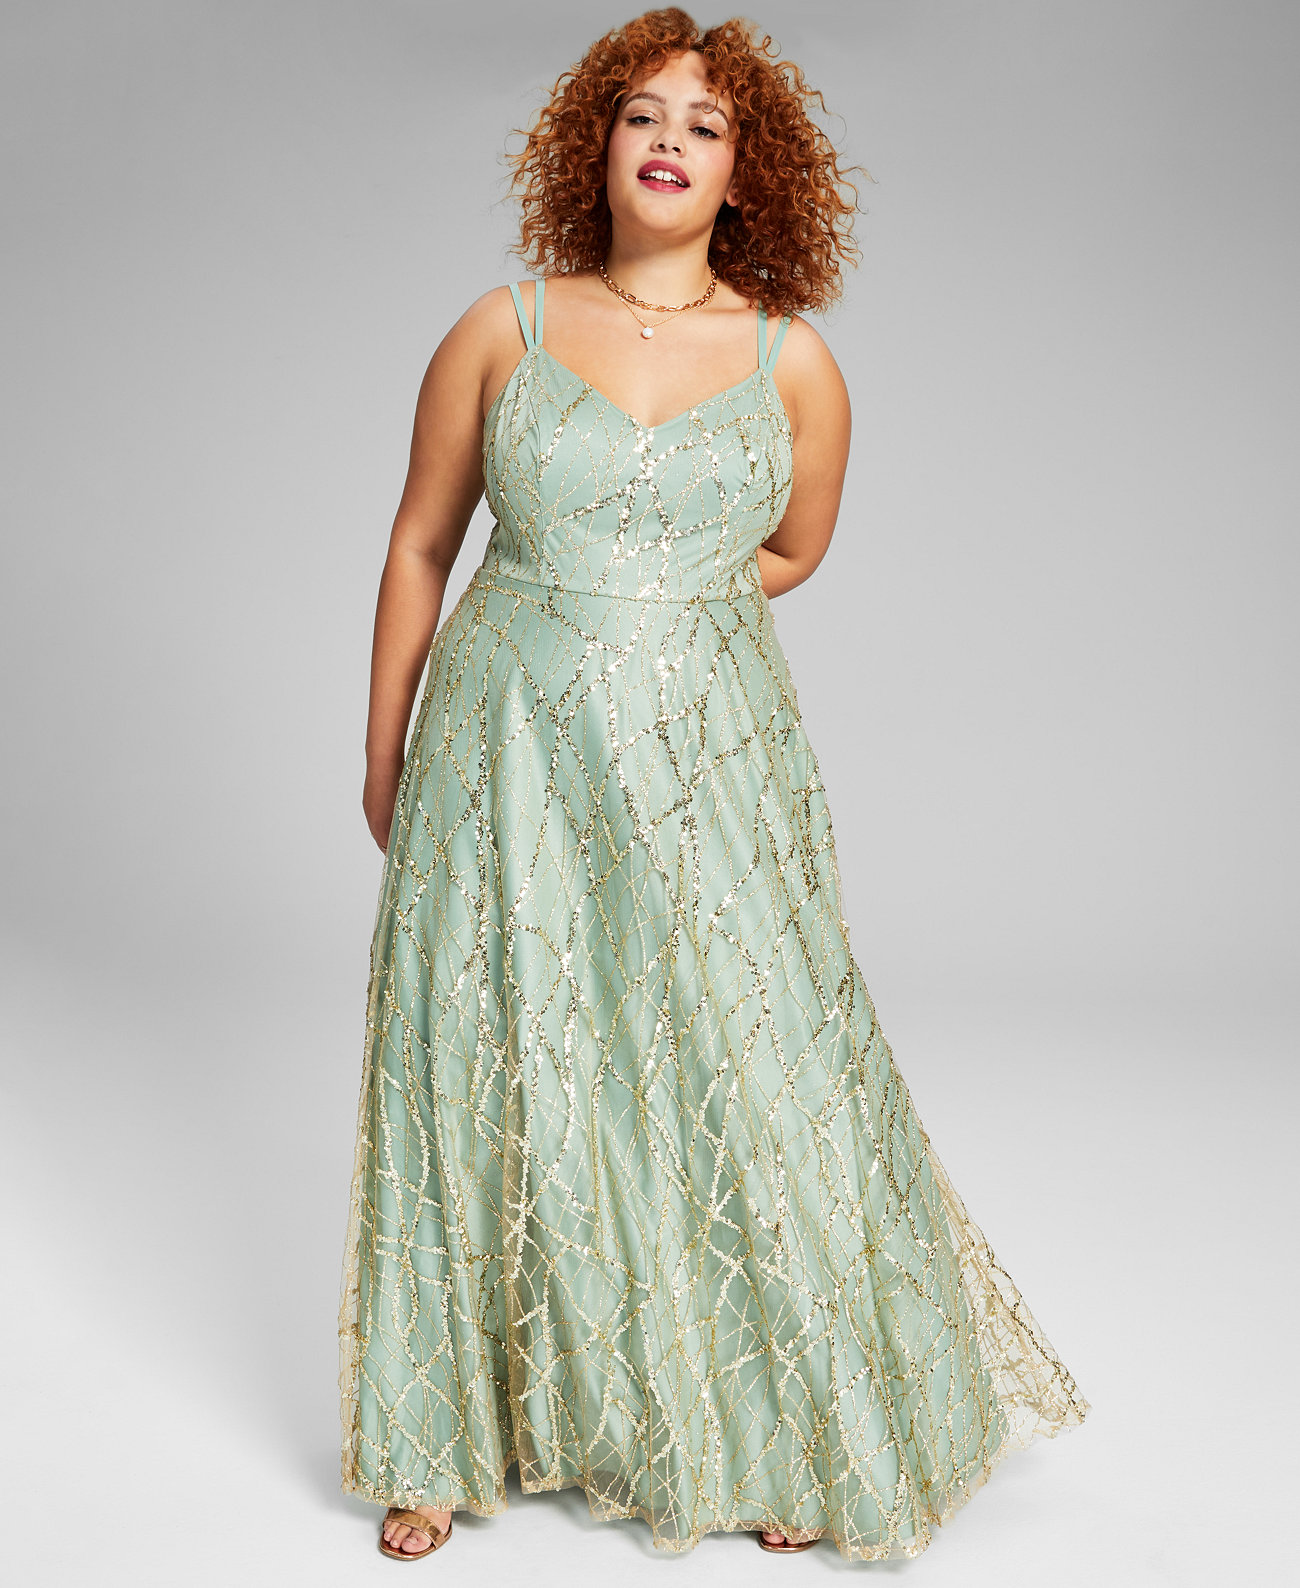 Модное платье больших размеров из блестящей сетки, созданное для Macy's Say Yes